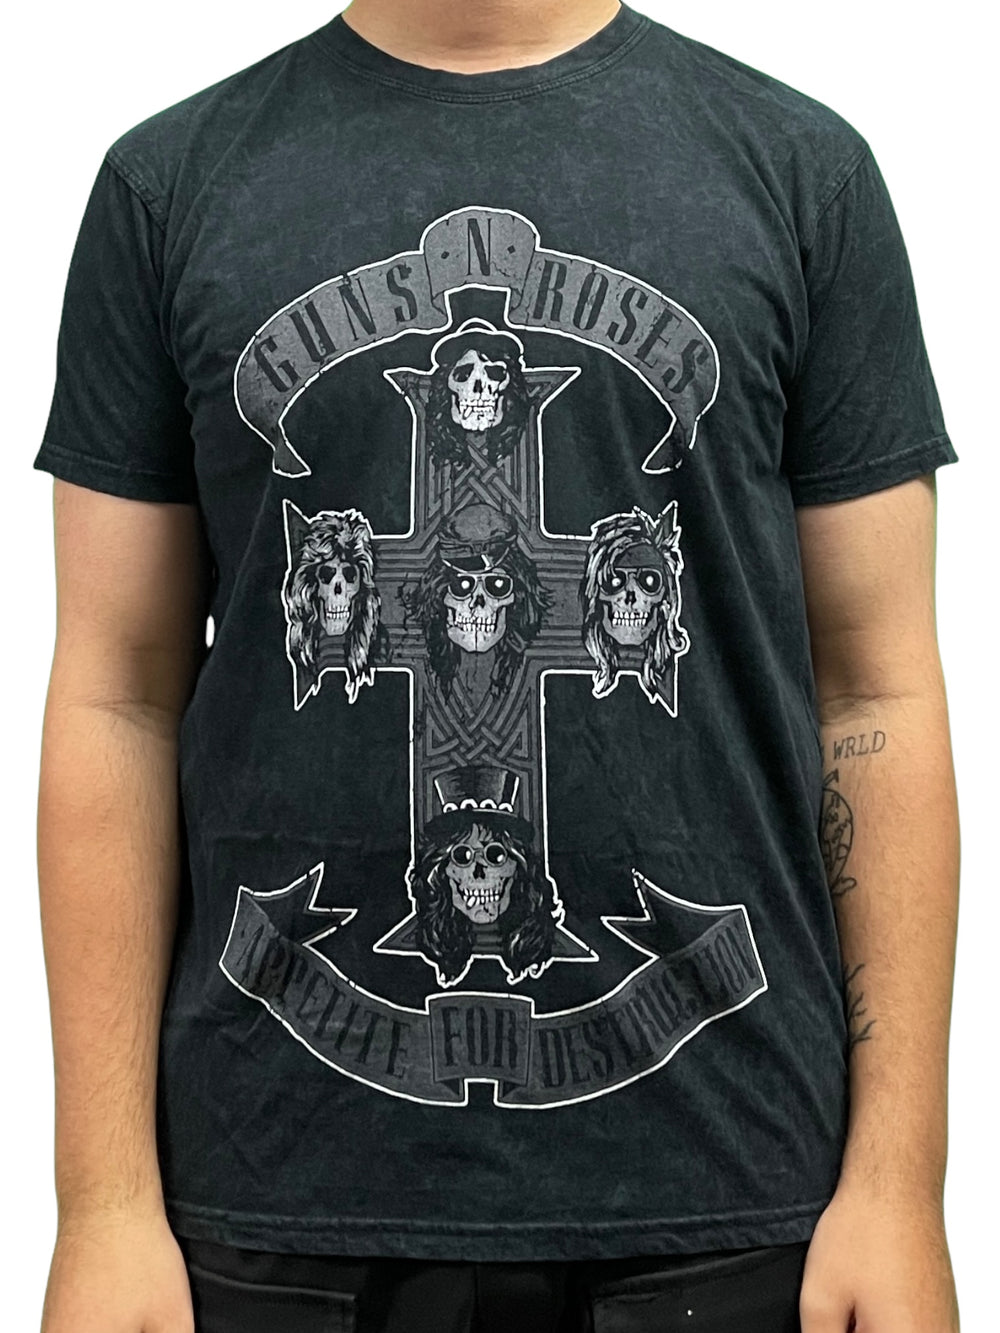 Guns N' Roses - Monochrome Cross (Dip-Dye) Official Unisex T Shirt Slim Fit NEW